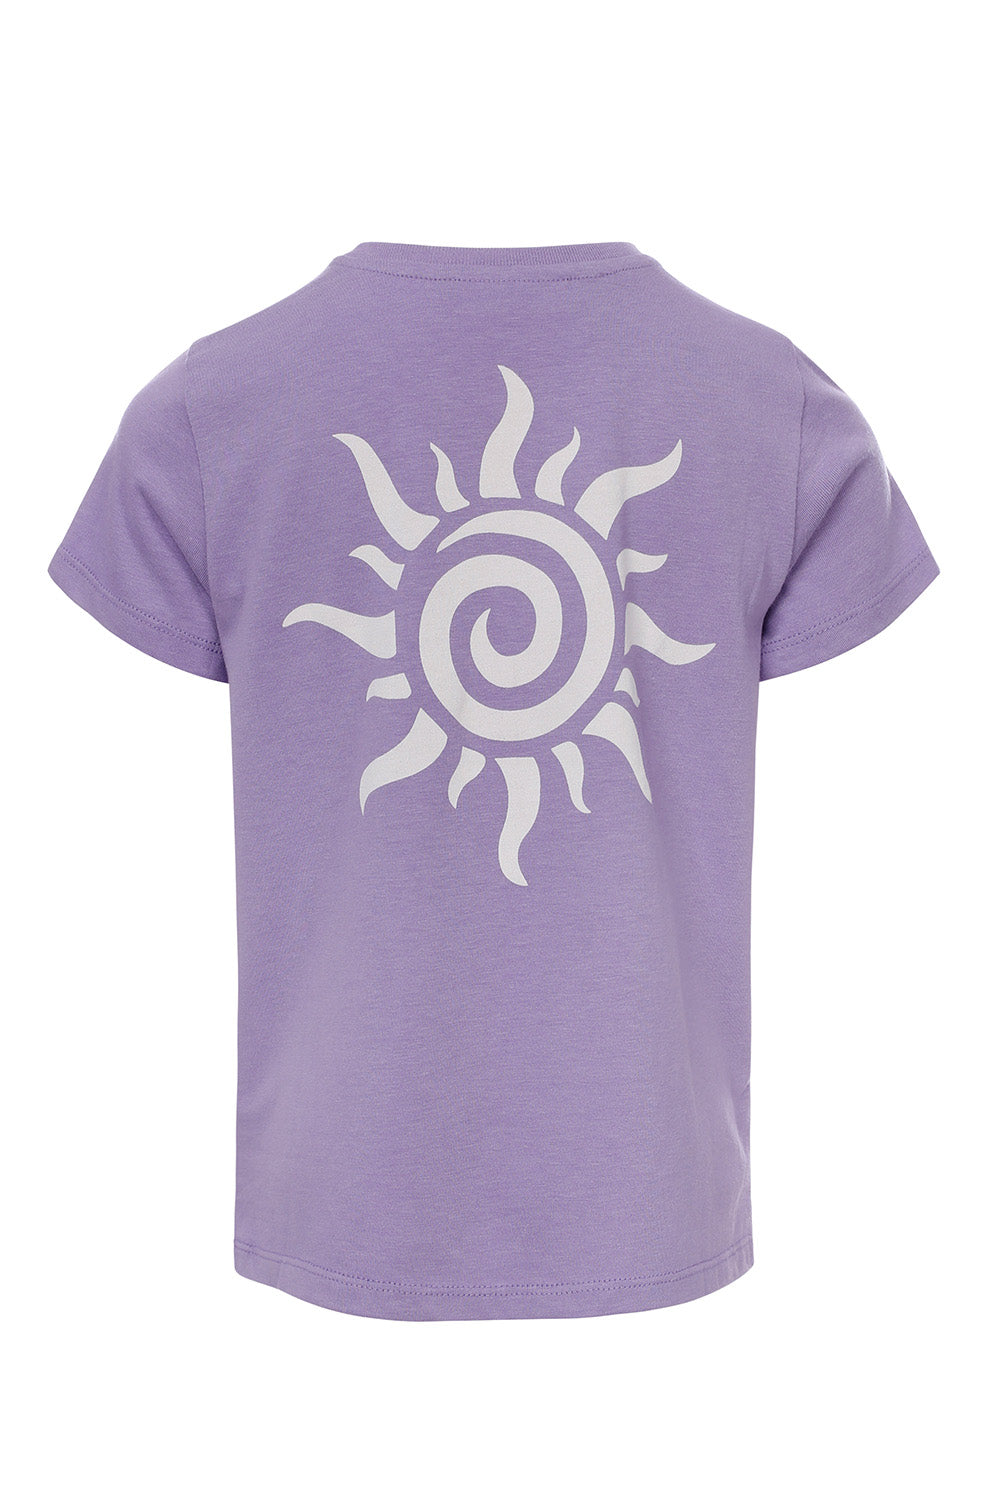 Meisjes T-Shirt van LOOXS 10sixteen in de kleur Pale purple in maat 176.